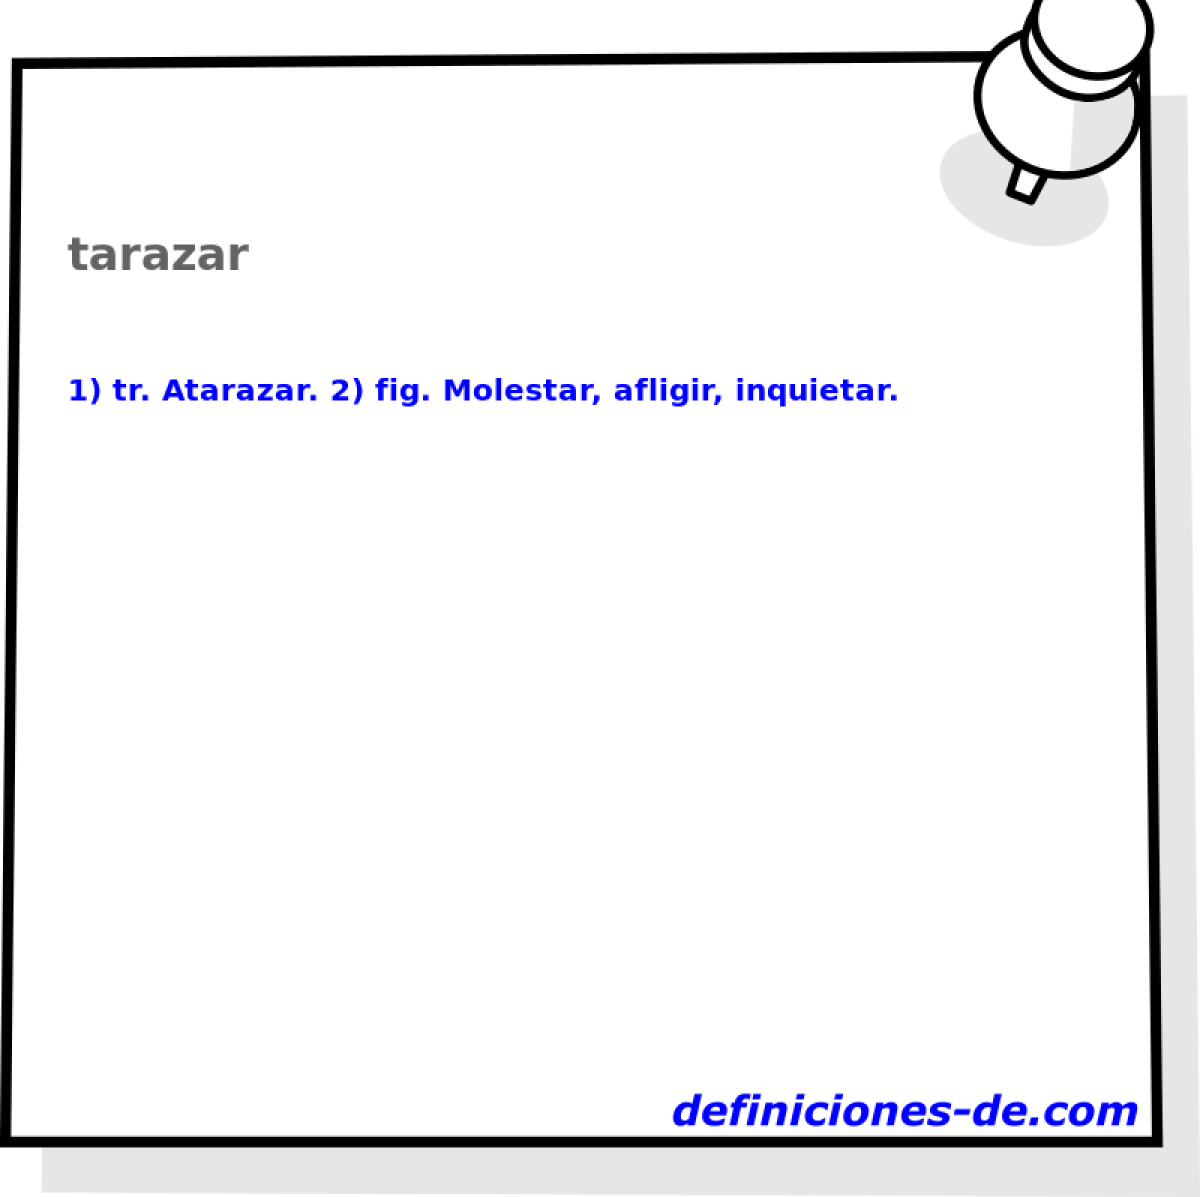 tarazar 